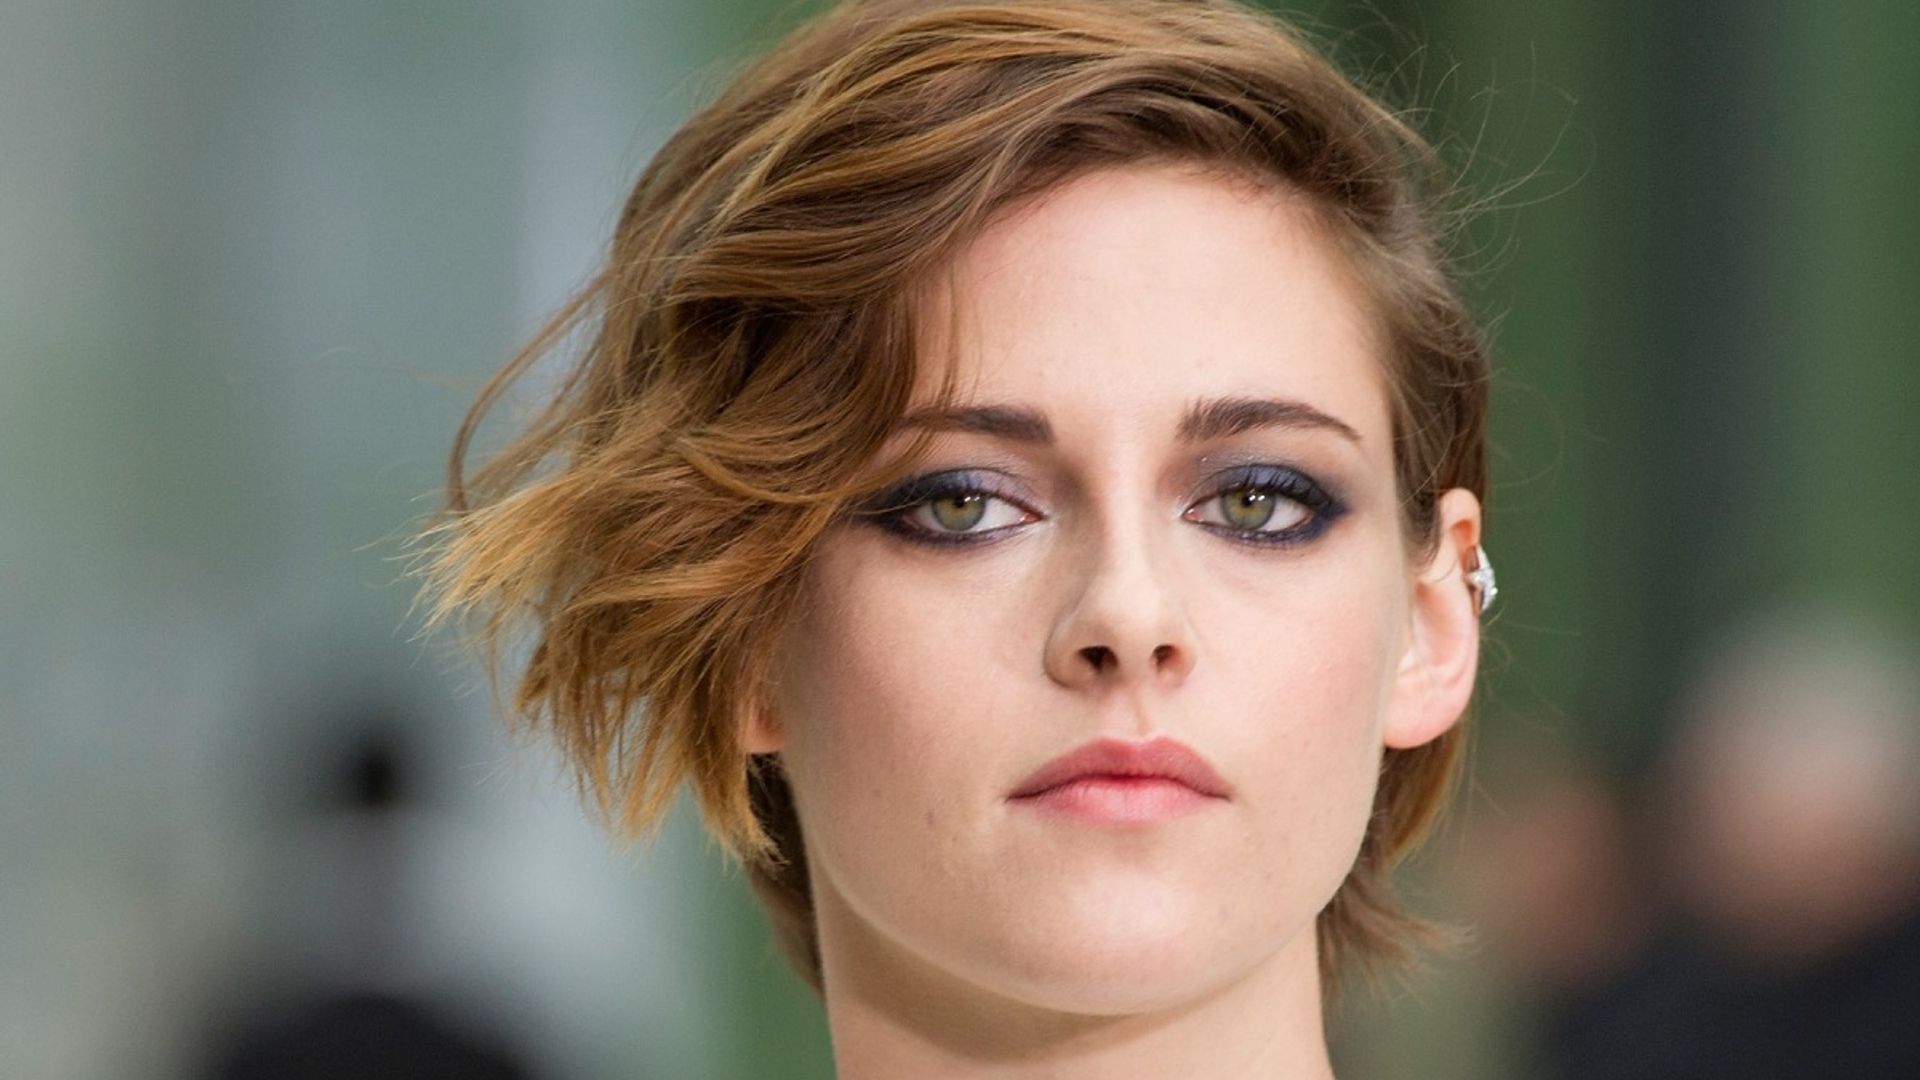 Kristen Stewart shocks fans with unexpected statement about ex-boyfriend Robert Pattinson